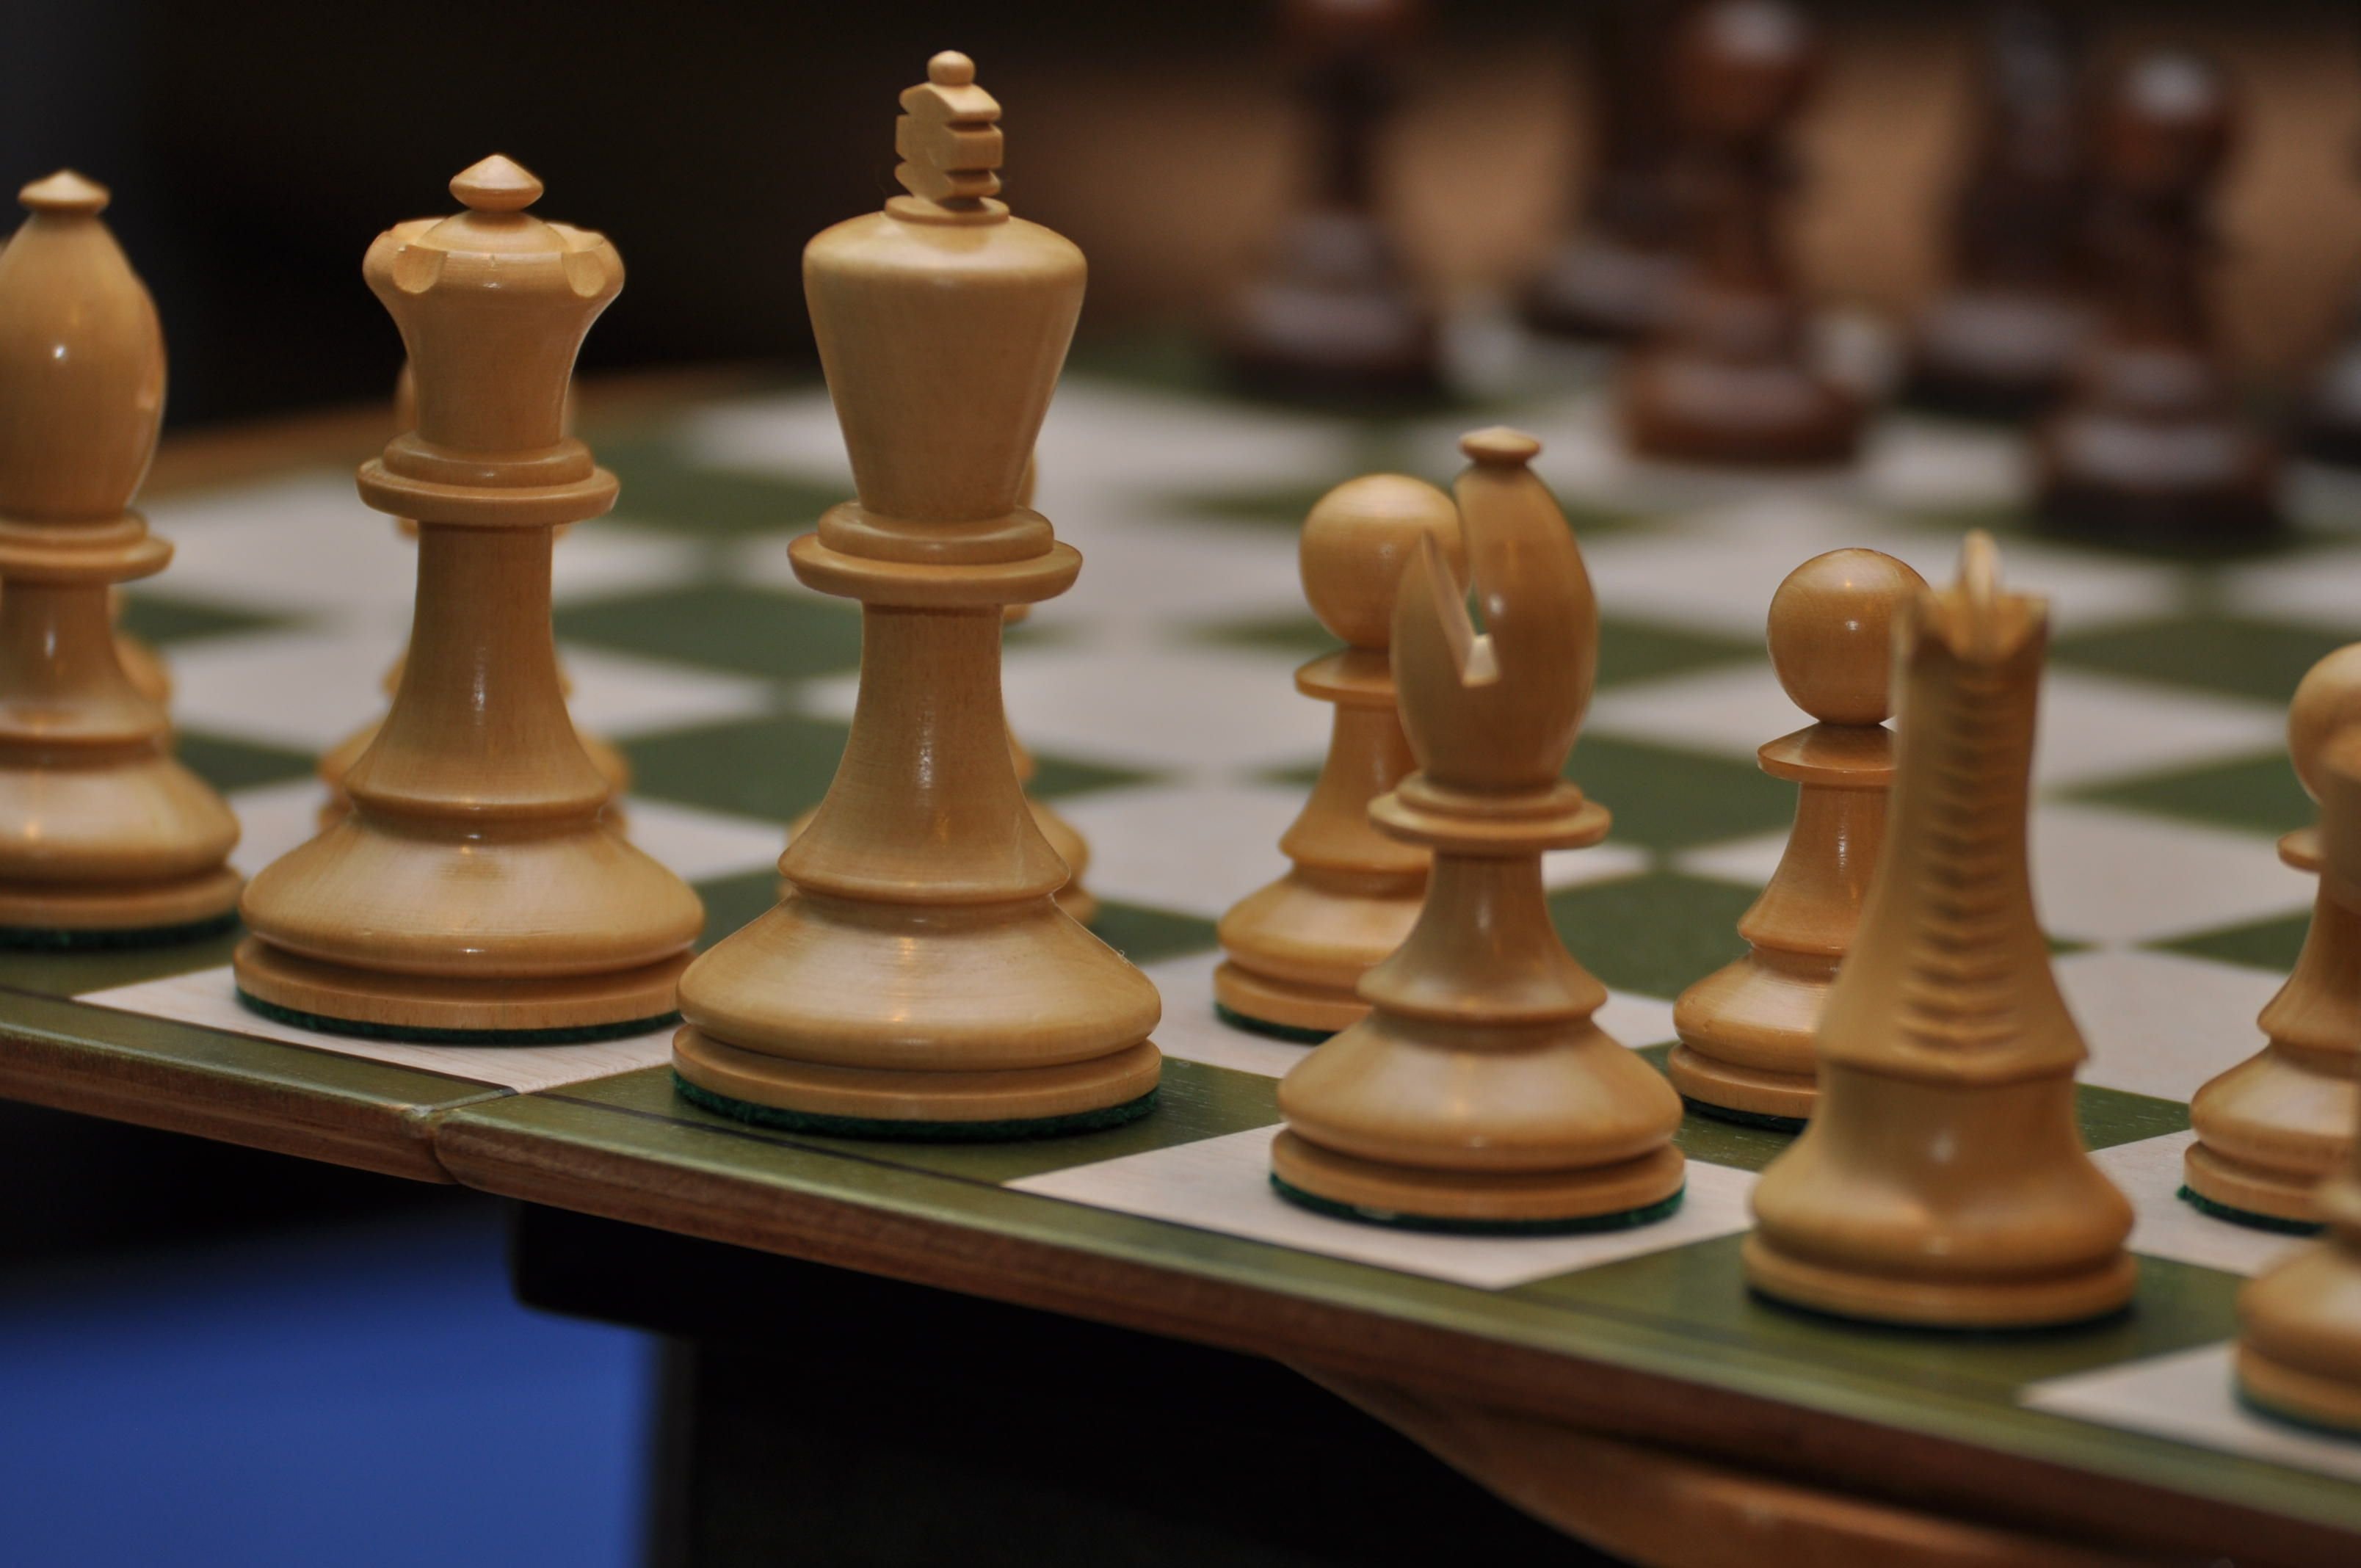 Разнообразие текстур и оттенков помогают передать разные нюансы и характер каждой шахматной фигуры.